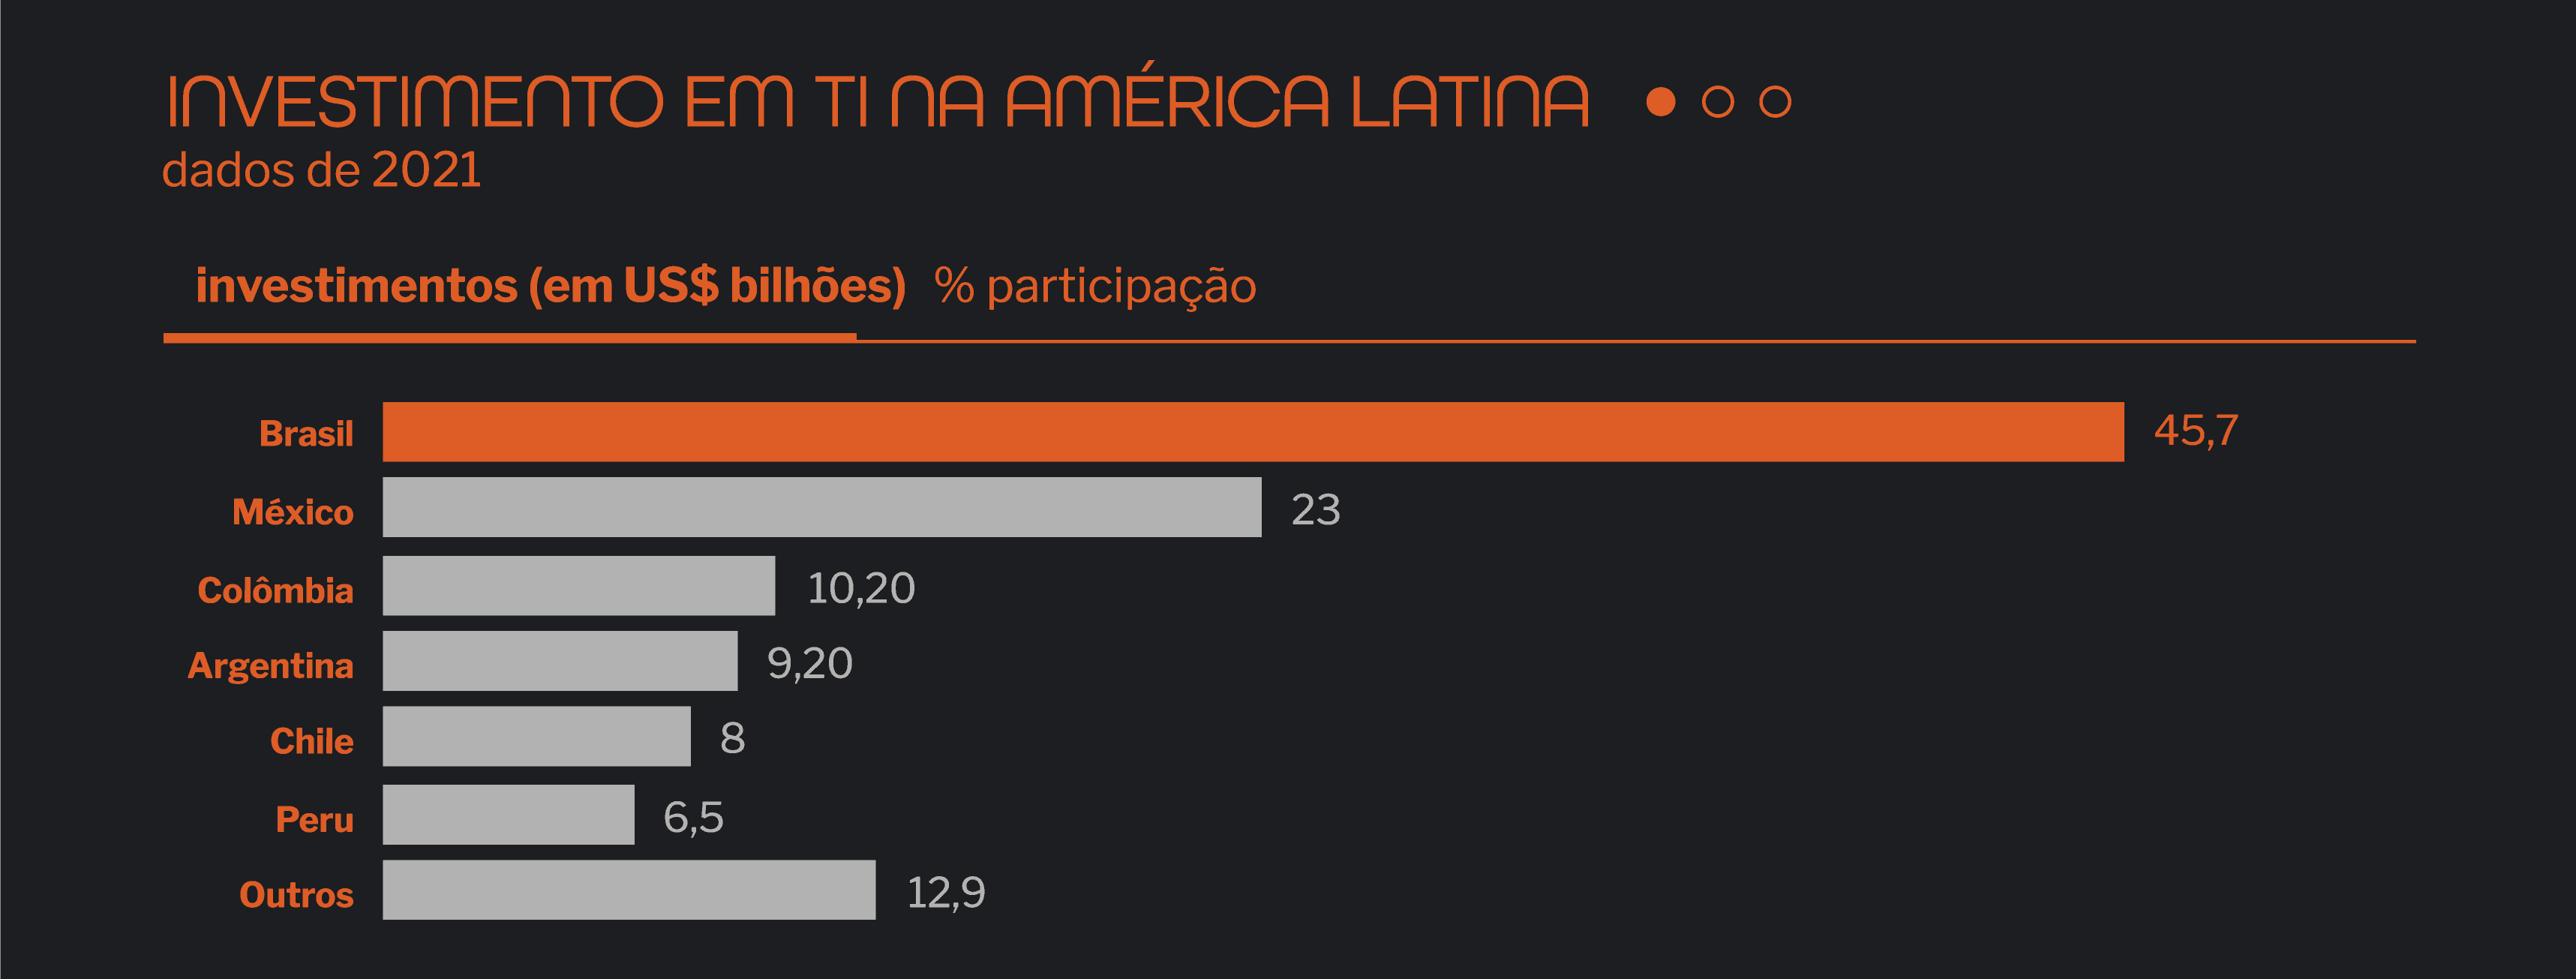 Investimentos em TI na América Latina 